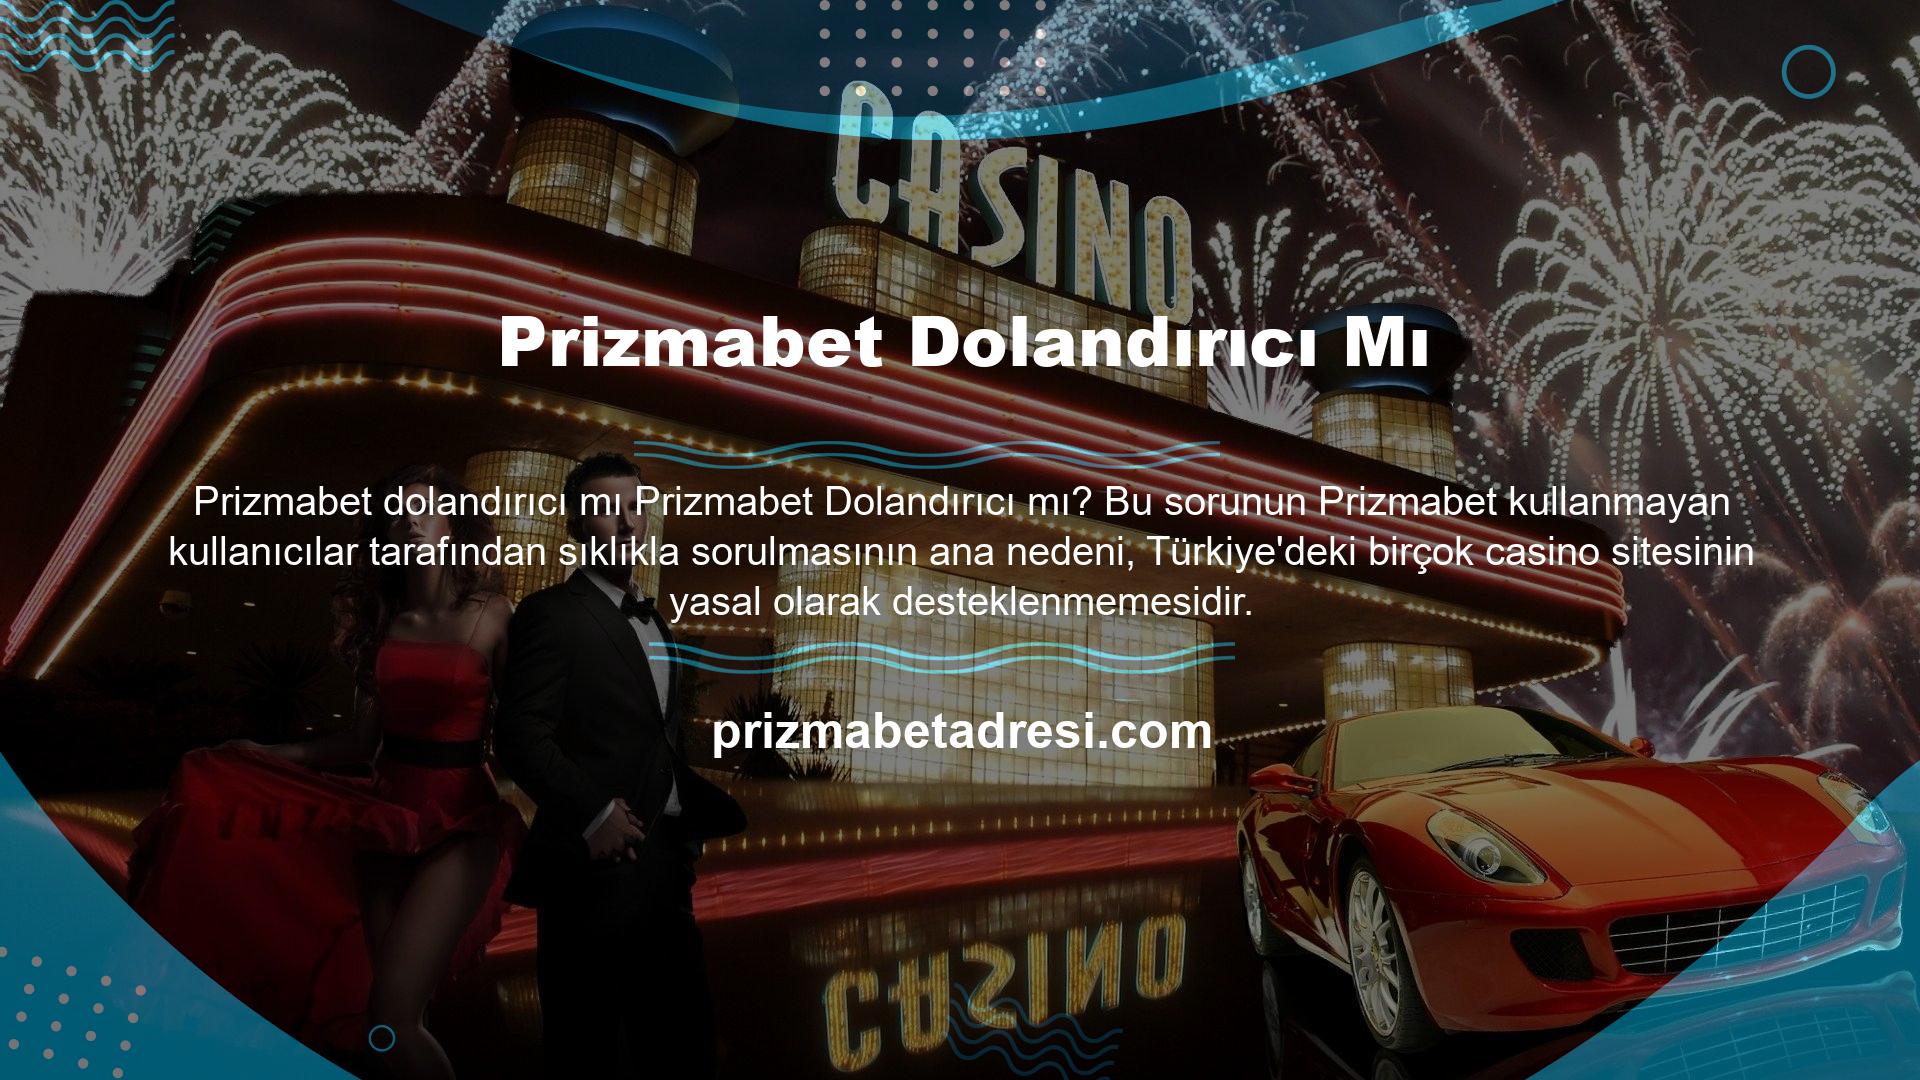 Prizmabet web sitesi, yasal olarak sigortalı birkaç casino, ve slot web sitesinden biridir